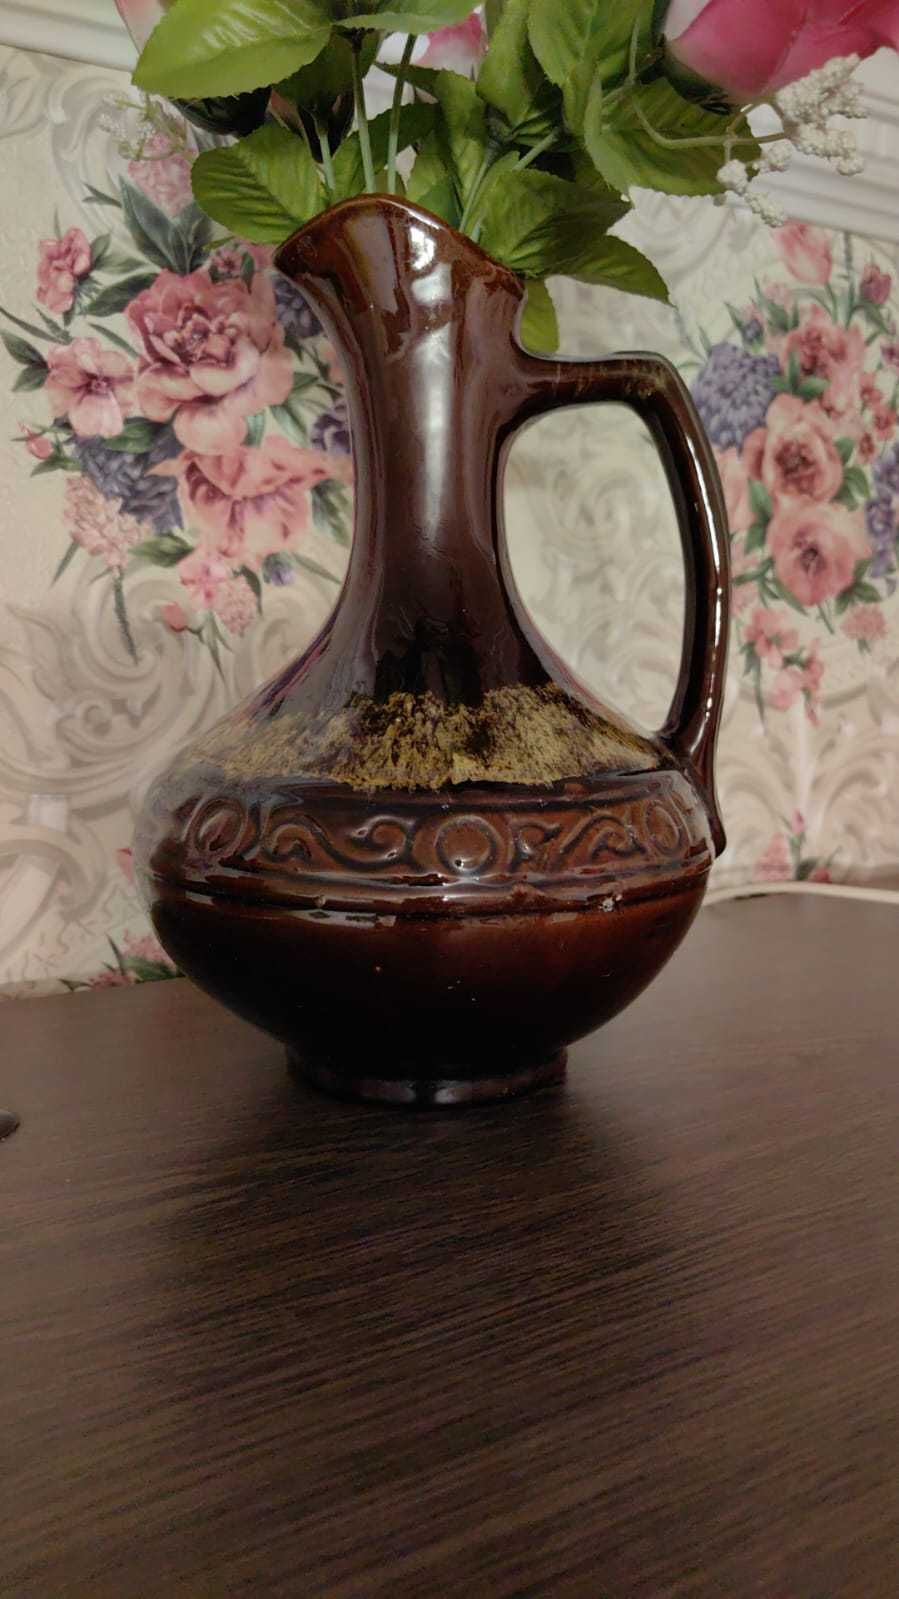 Продам вазы из гранита. — Купити в Коростишеві на баштрен.рф #